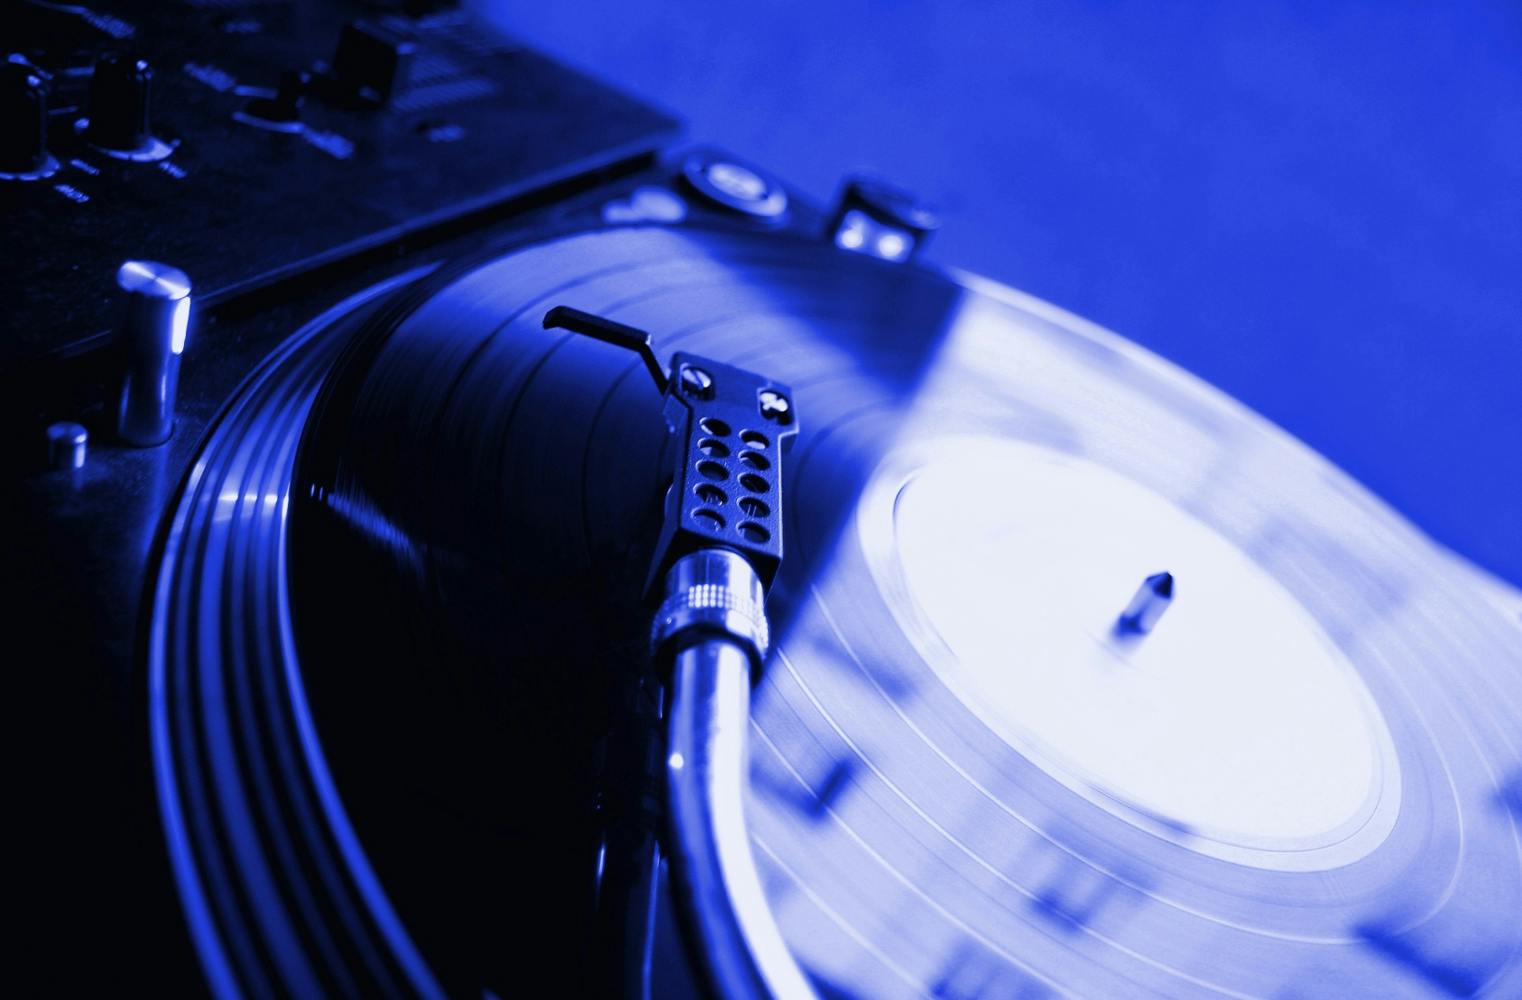 DJ am Mischpult sein | Turntablism, Scratching und mehr